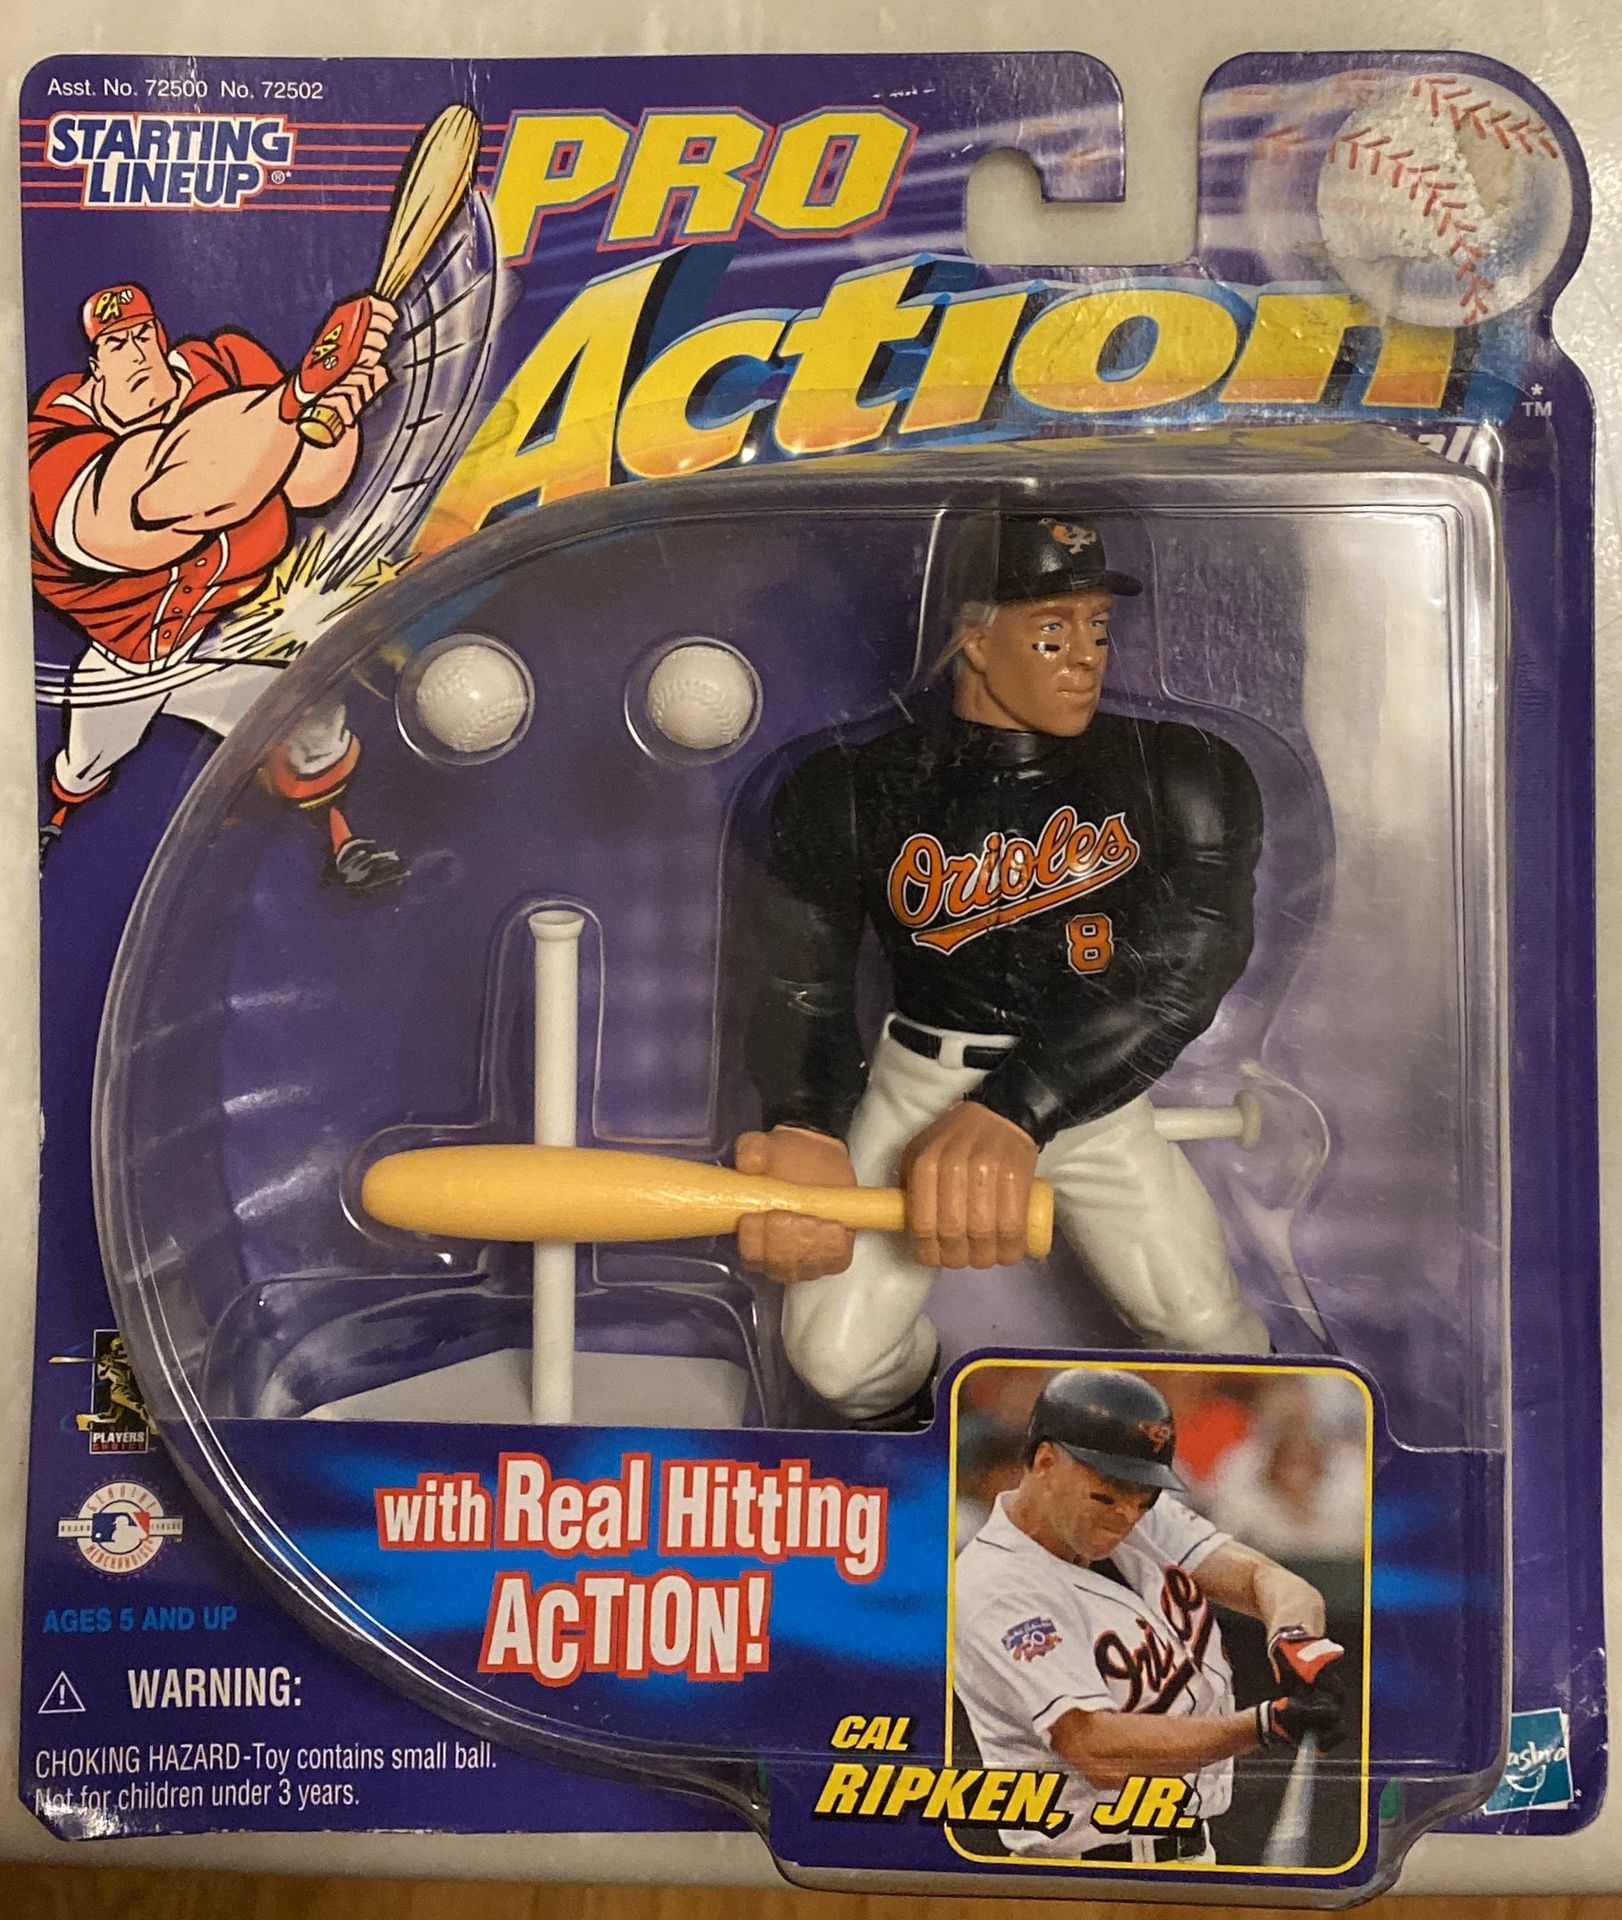 Cal Ripken, Jr Orioles collectible 1998 toy